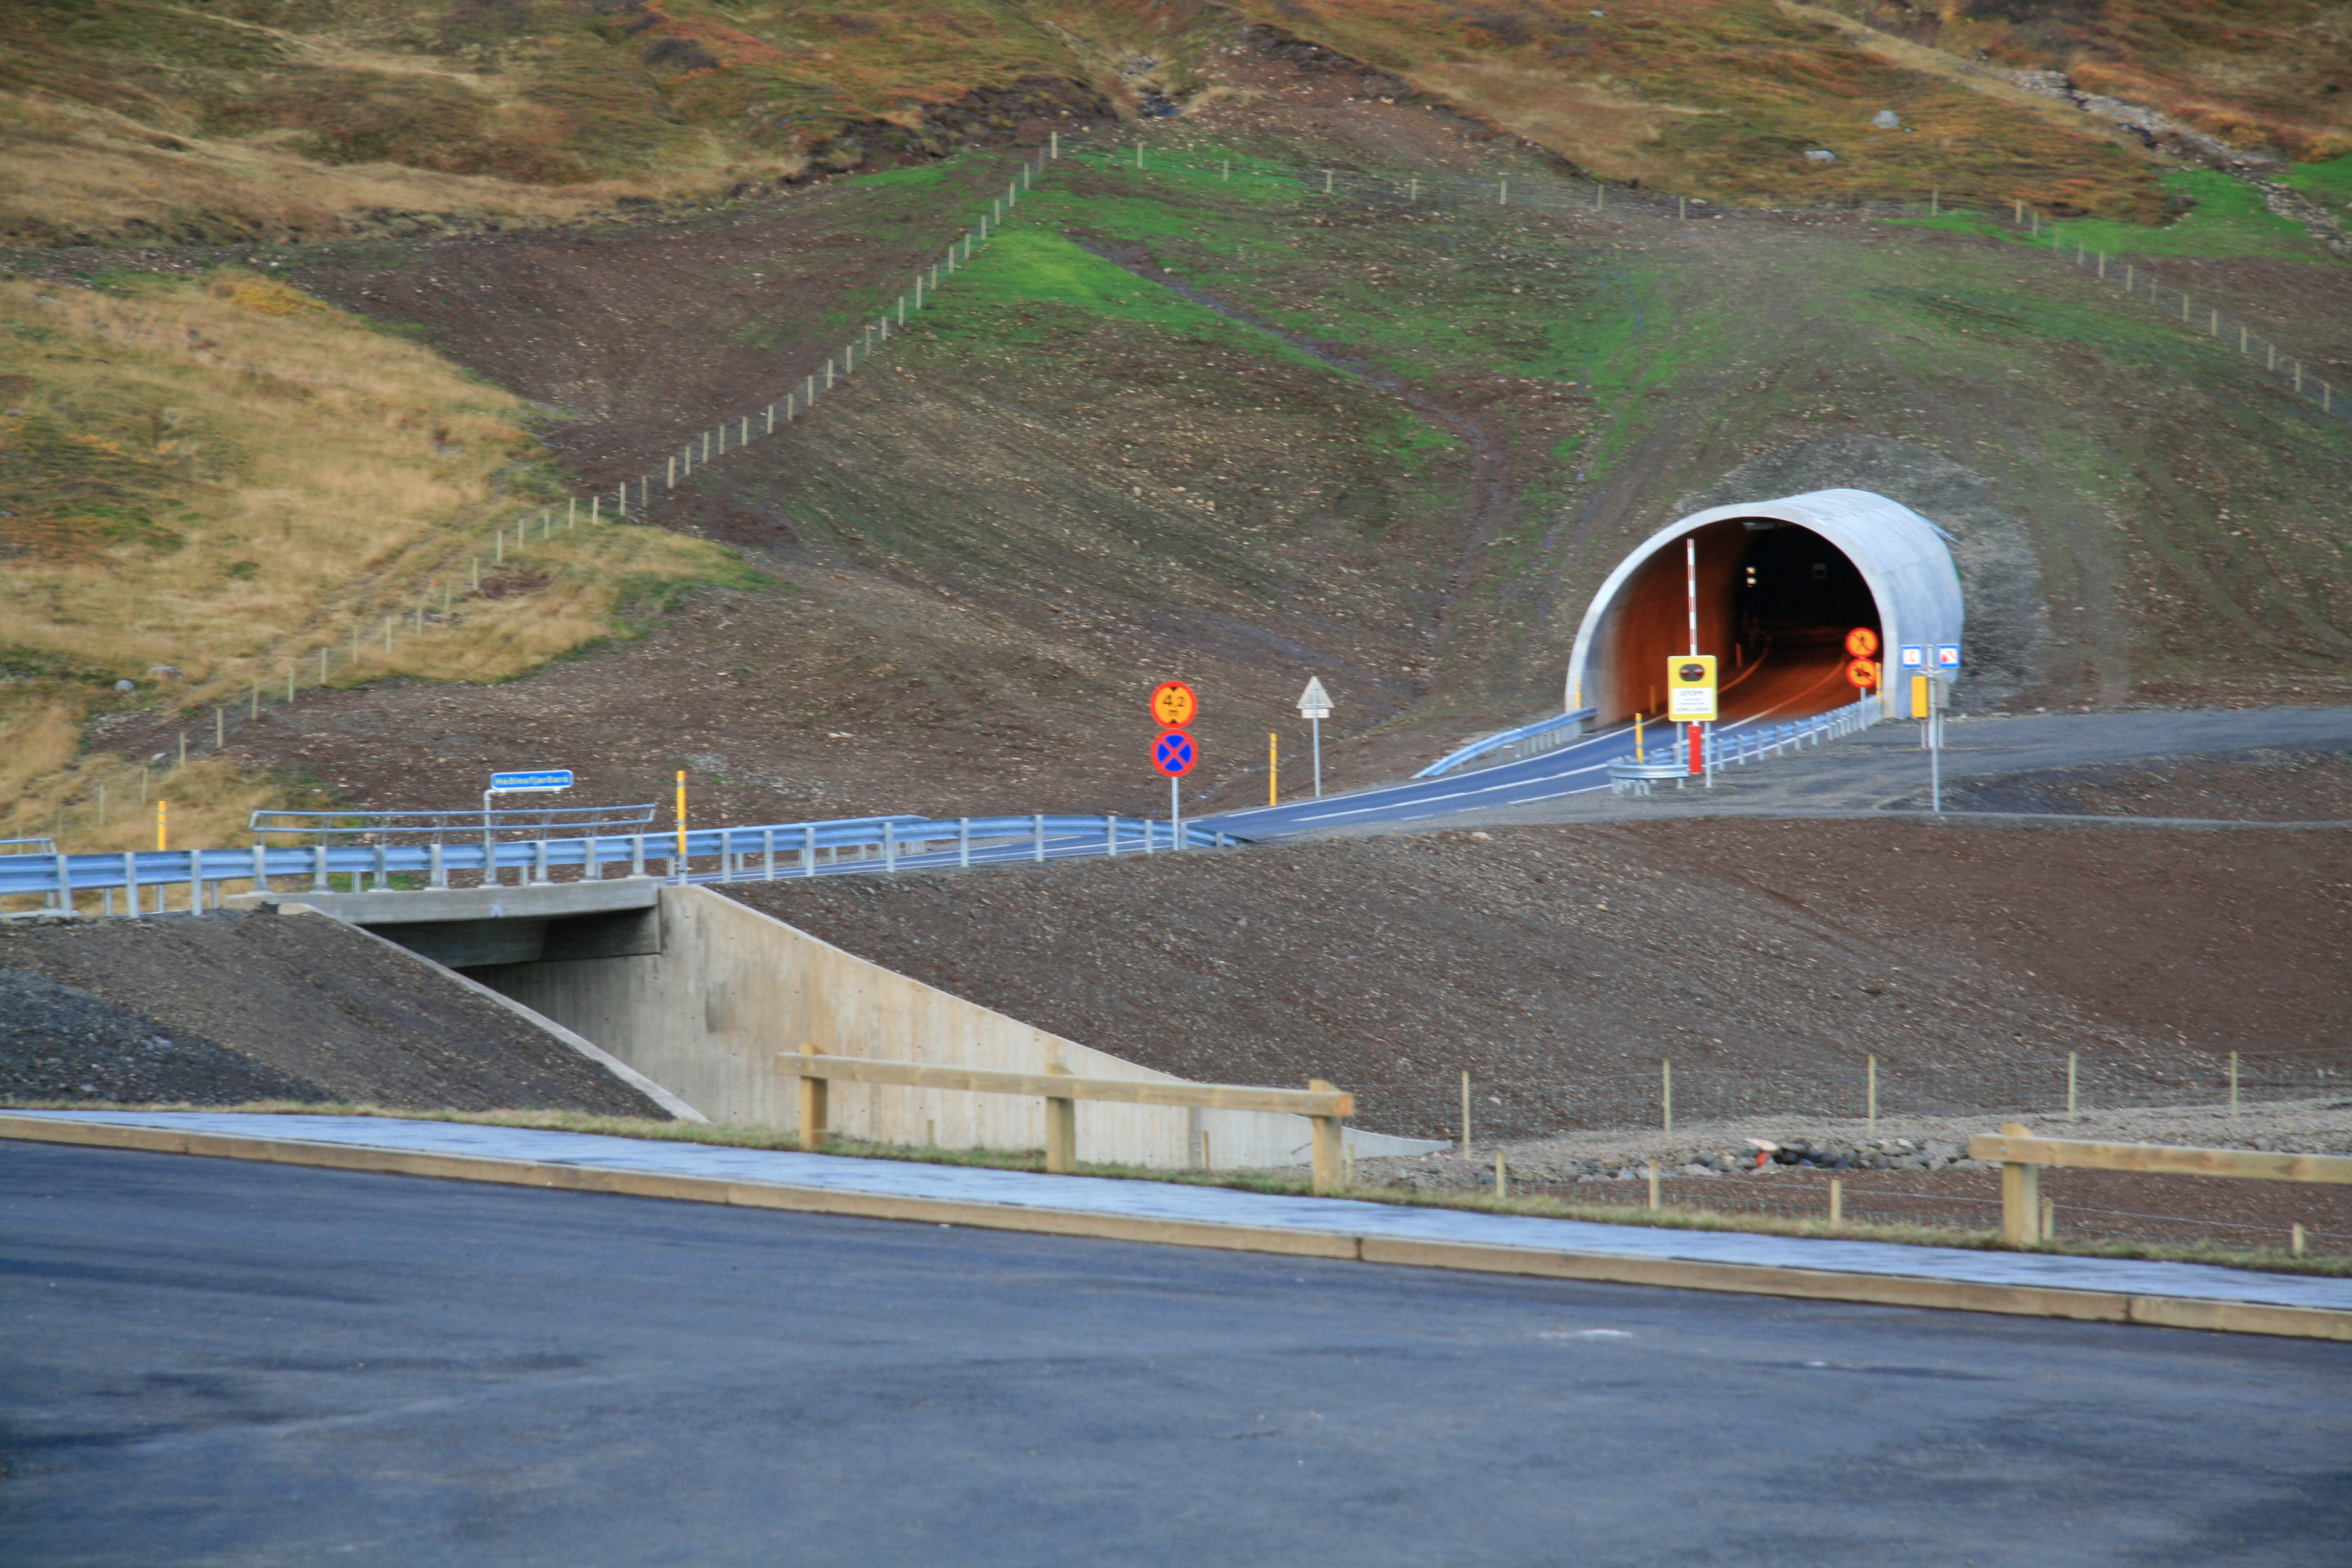 Héðinsfjörður tunnel in North Iceland